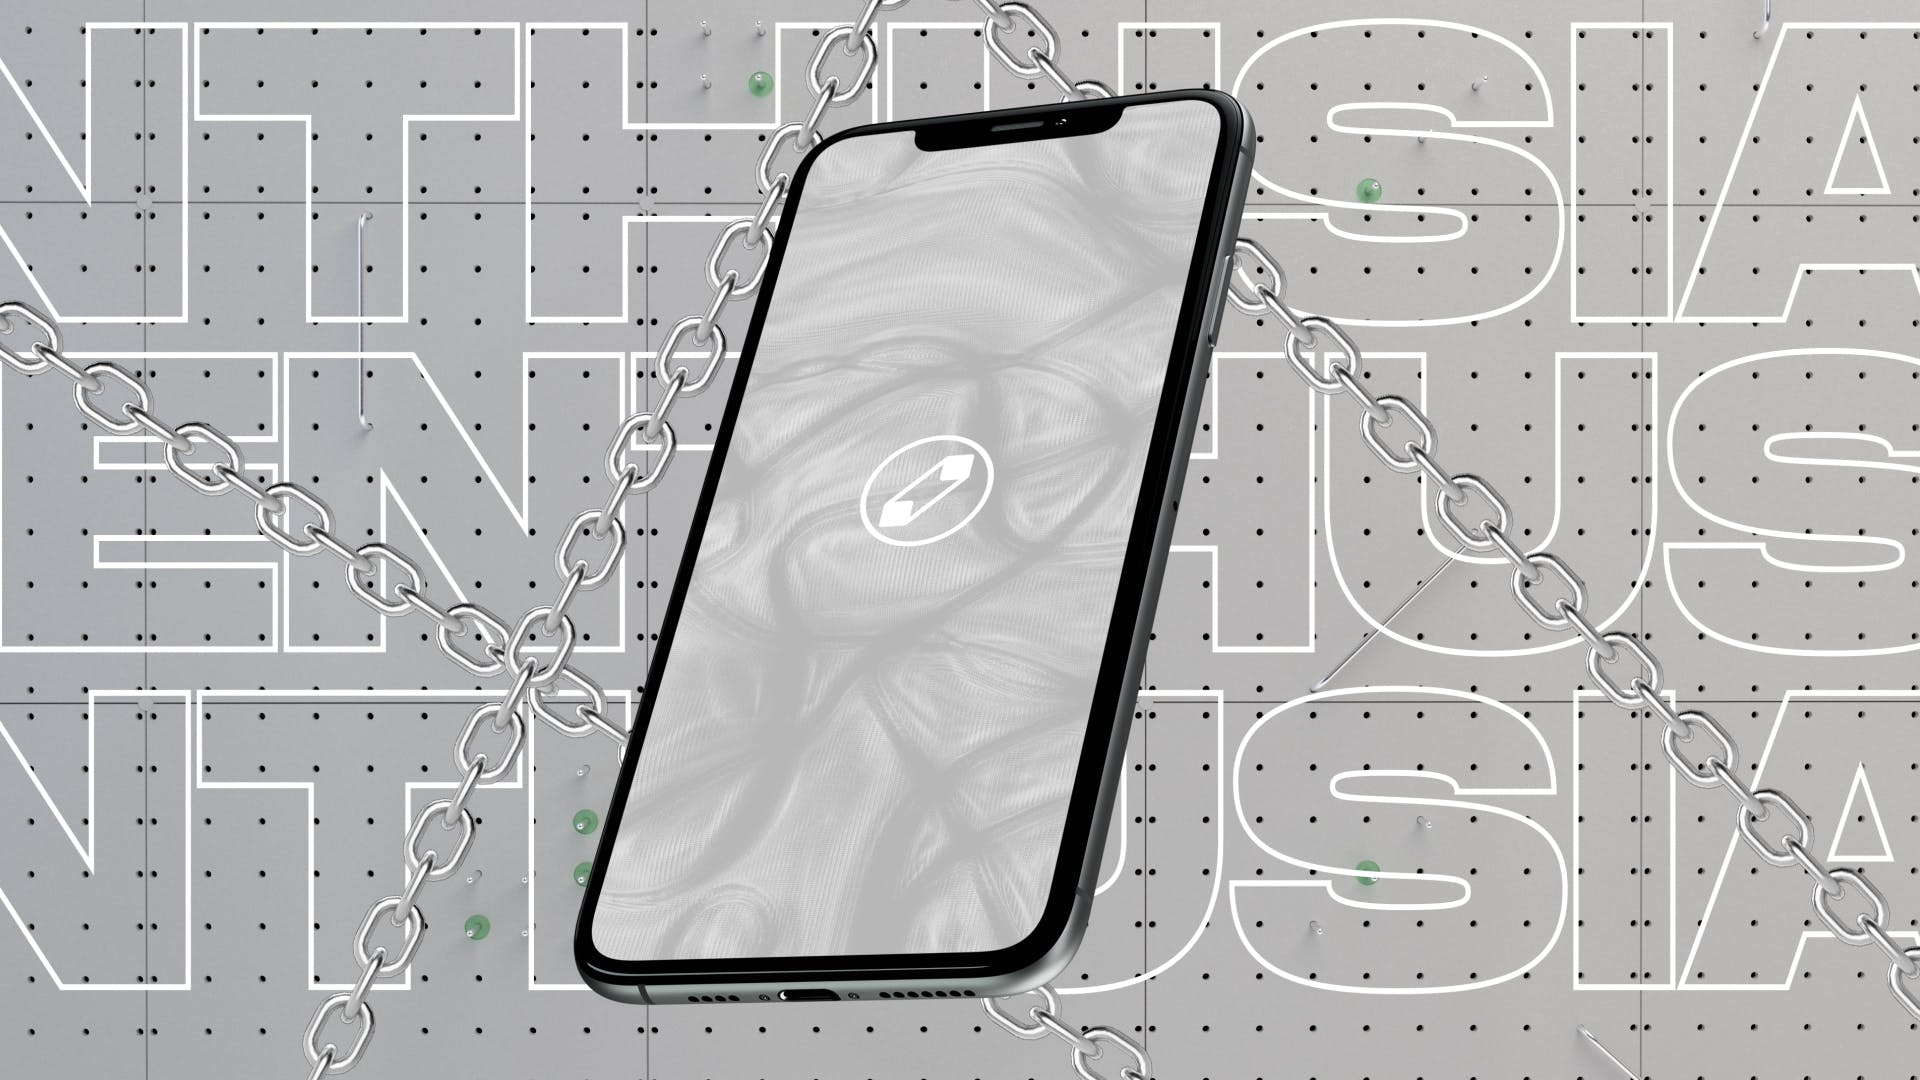 优雅时尚风格3D立体风格iPhone手机屏幕预览素材库精选样机 10 Light Phone Mockups插图(9)